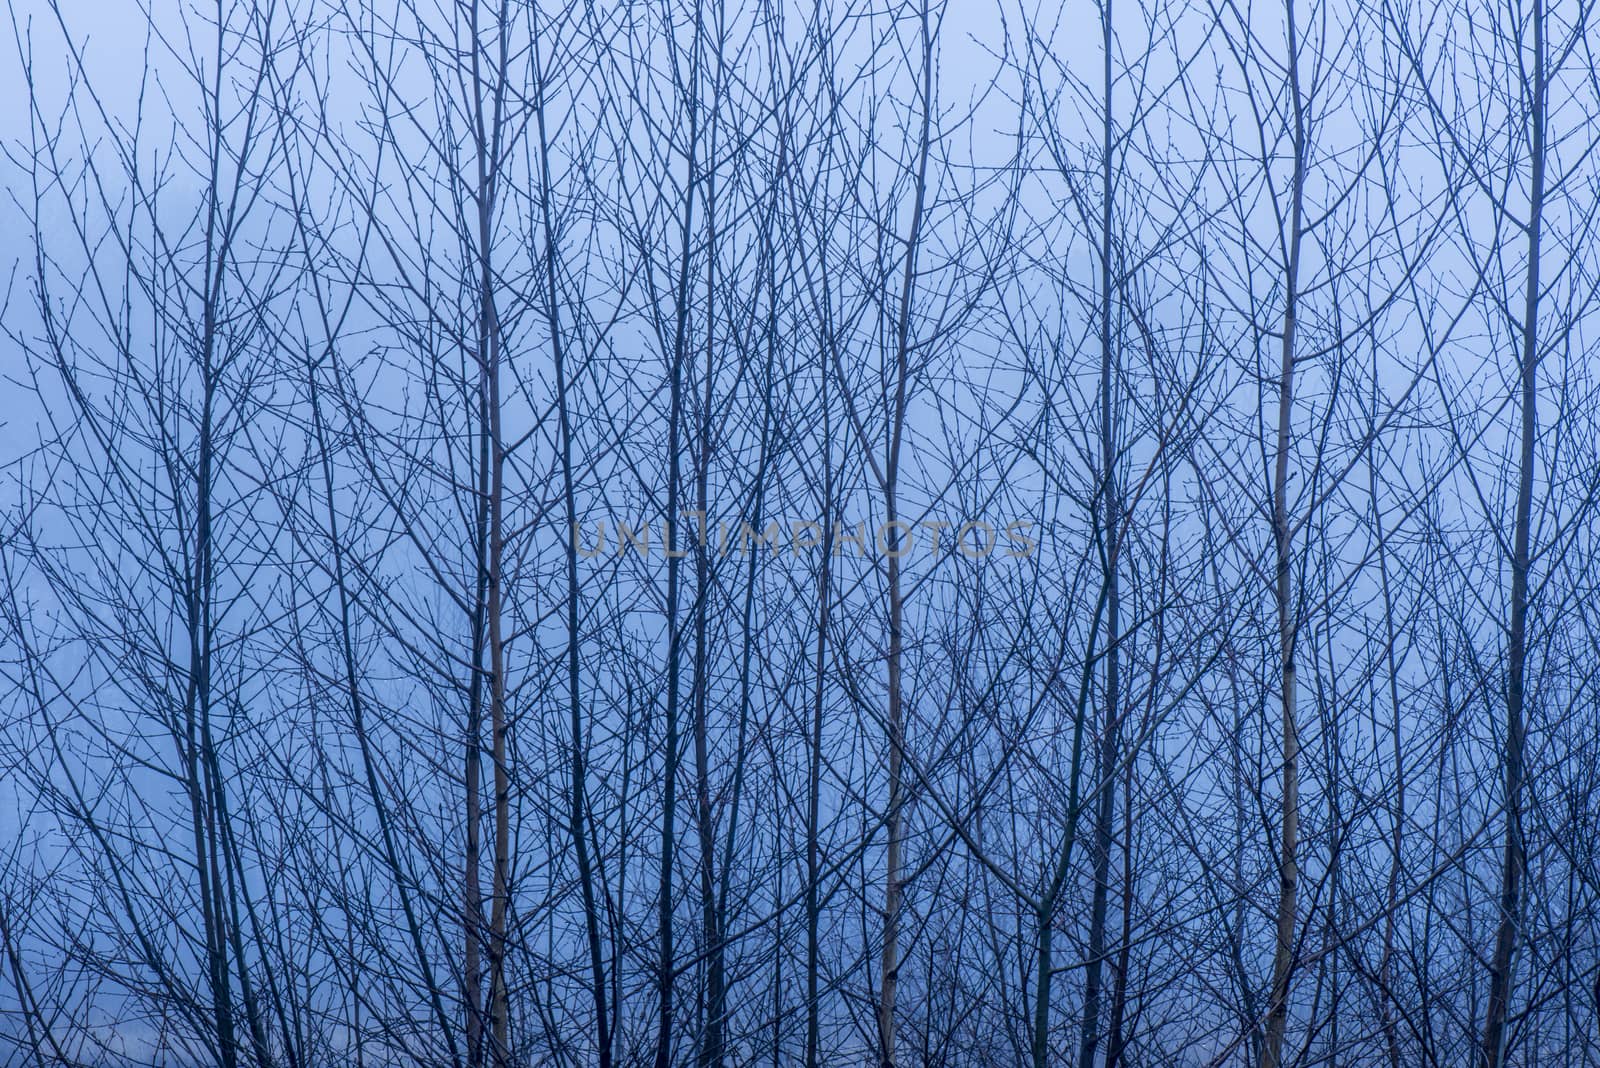 Birch tree branches in mist by Tofotografie